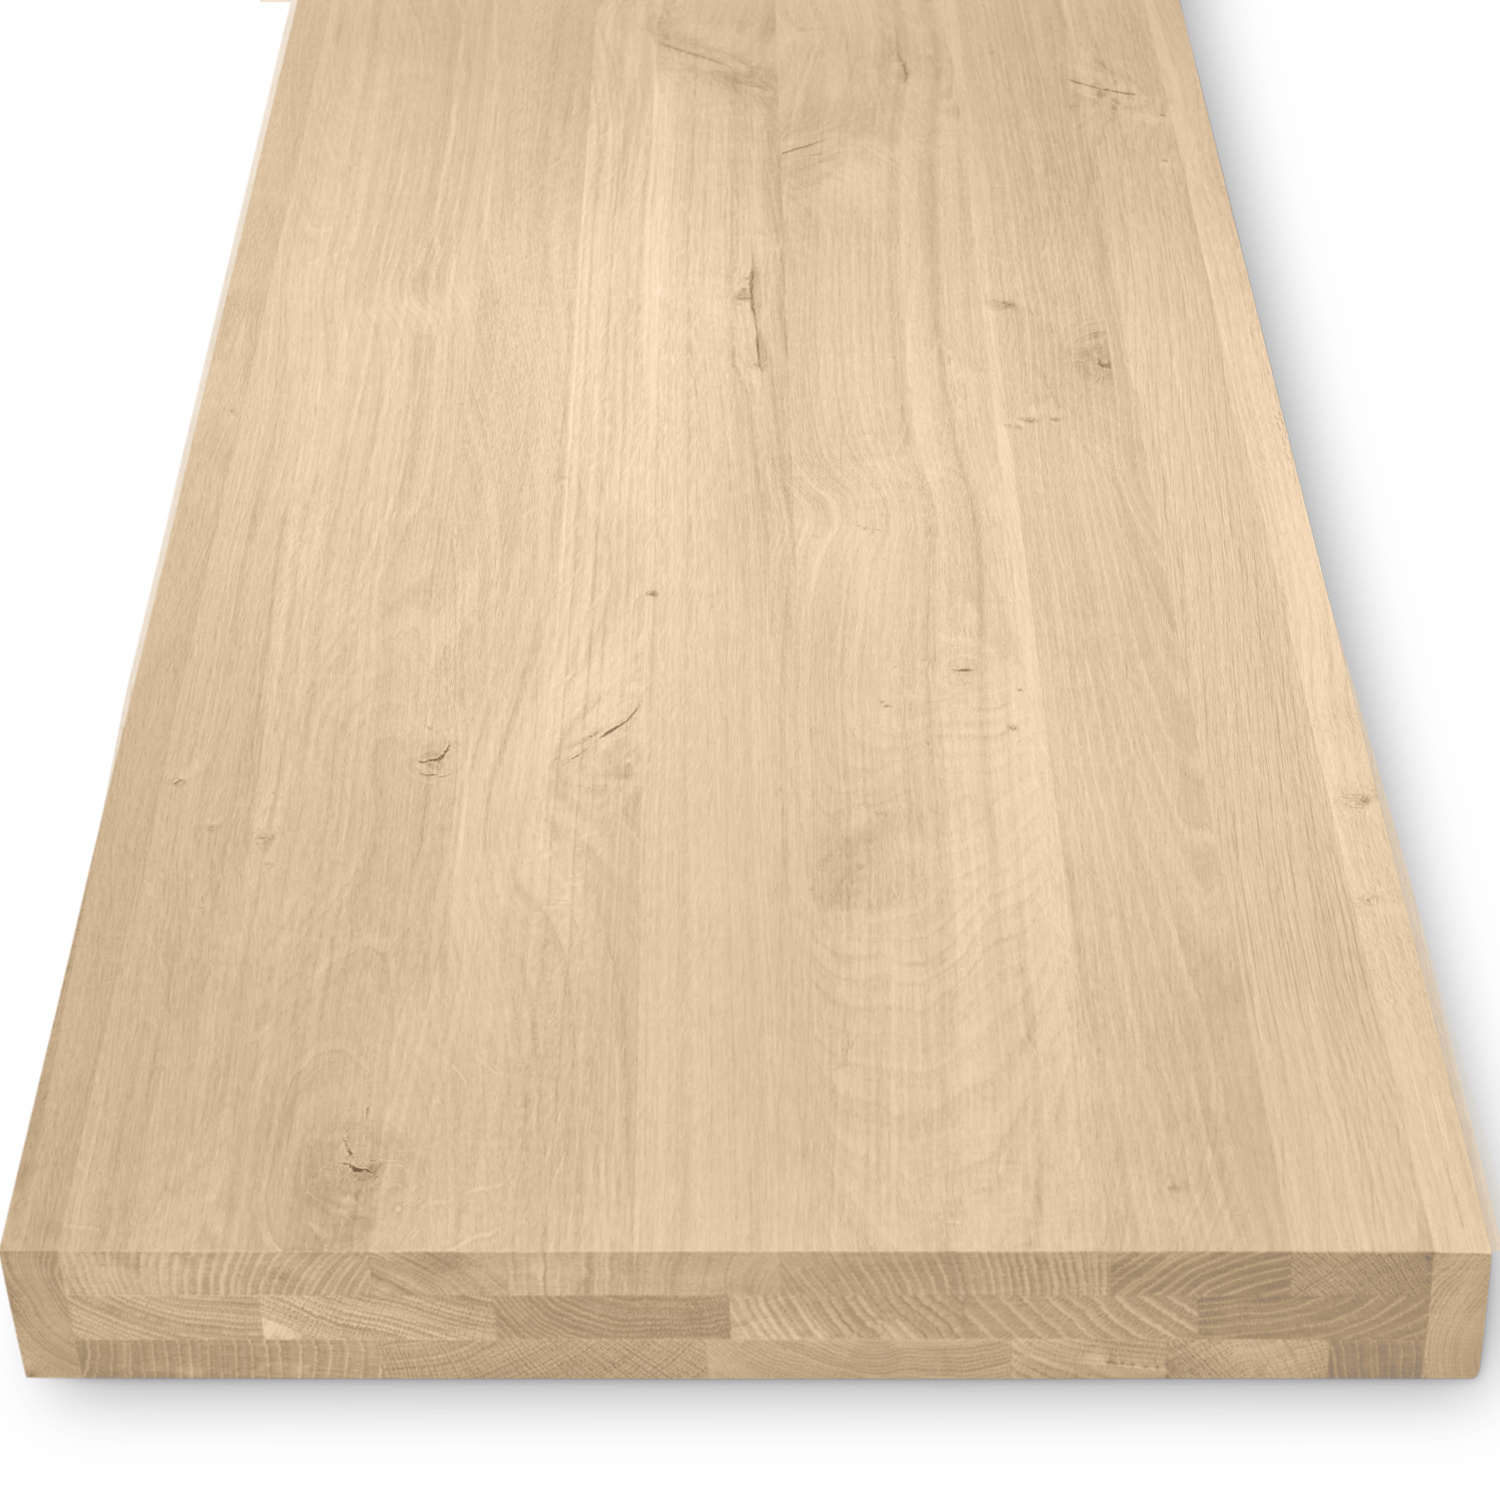  Leimholzplatte Eiche nach Maß - 6 cm dick (3-lagig augedoppelt - Hohl) - Eichenholz rustikal - Eiche Holzplatte - verleimt & künstlich getrocknet (HF 8-12%) - 15-120x20-350 cm